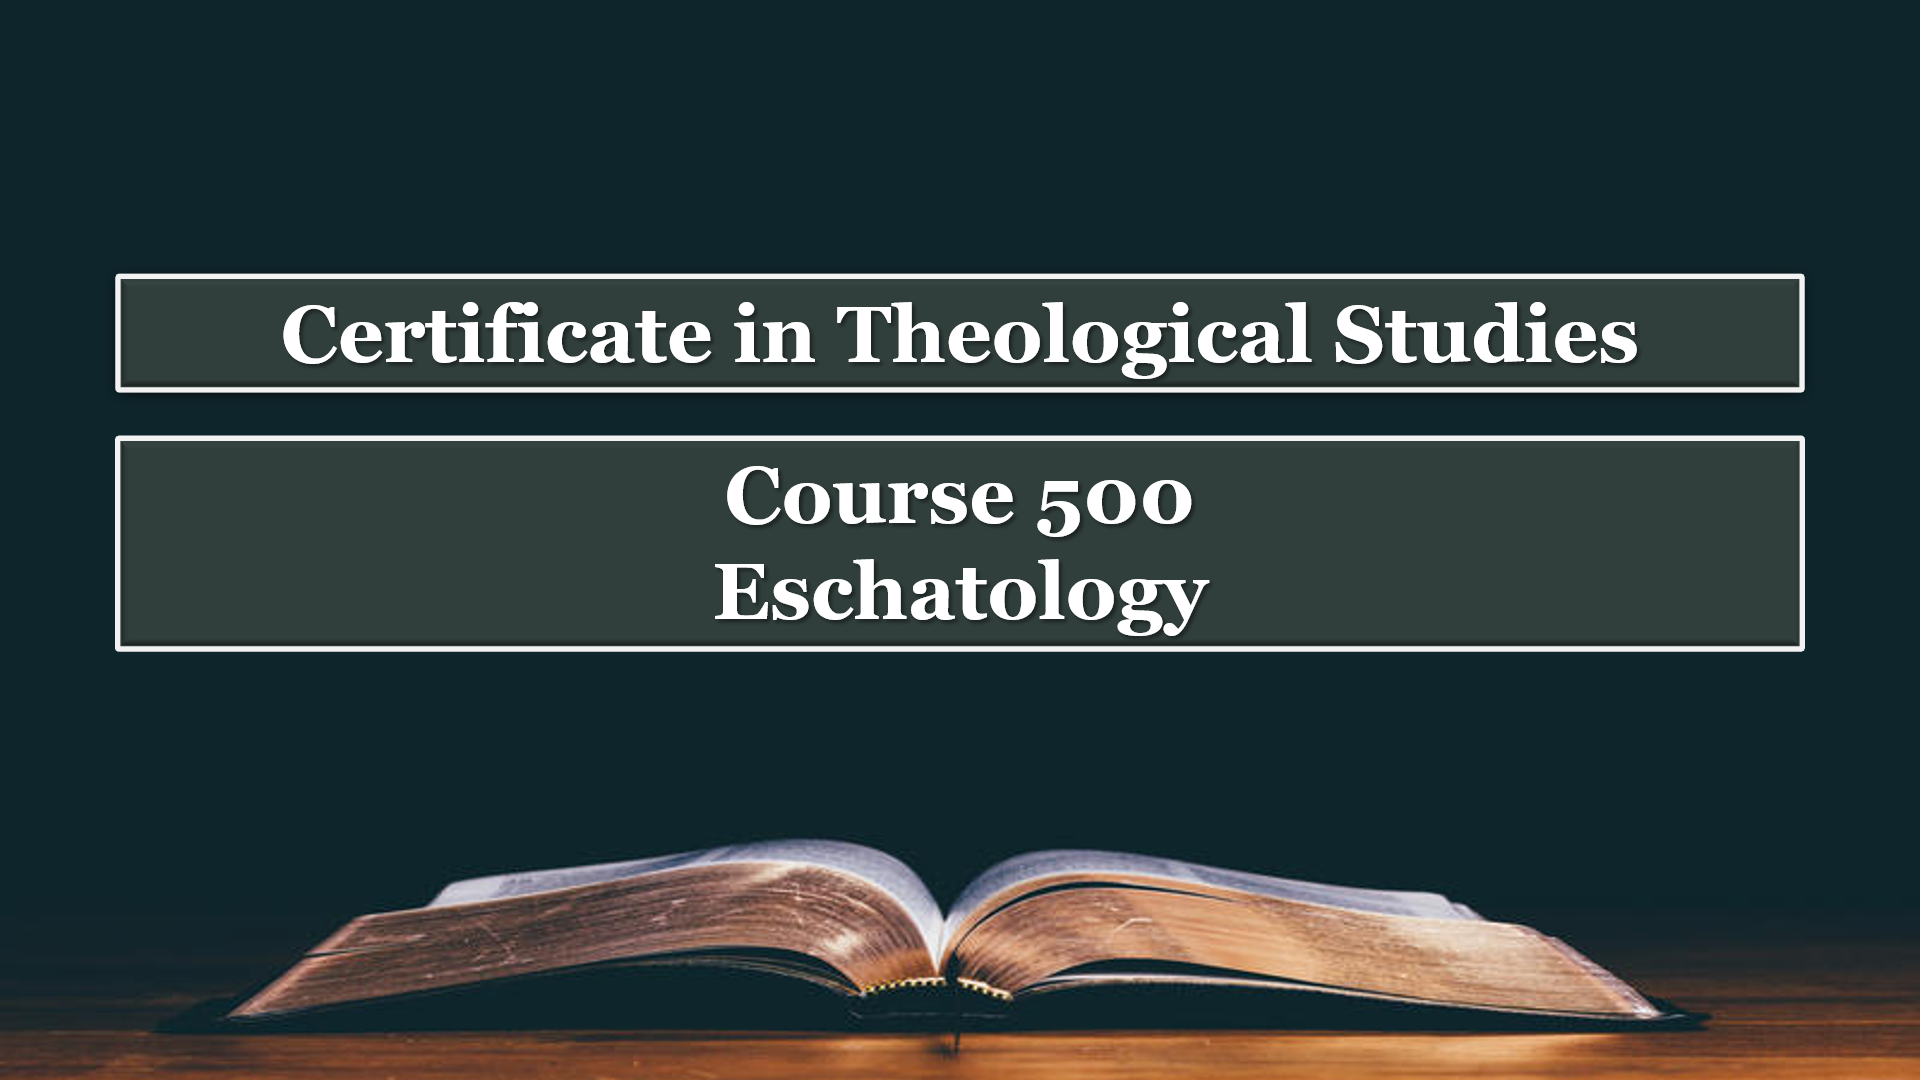 Course 500: Eschatology